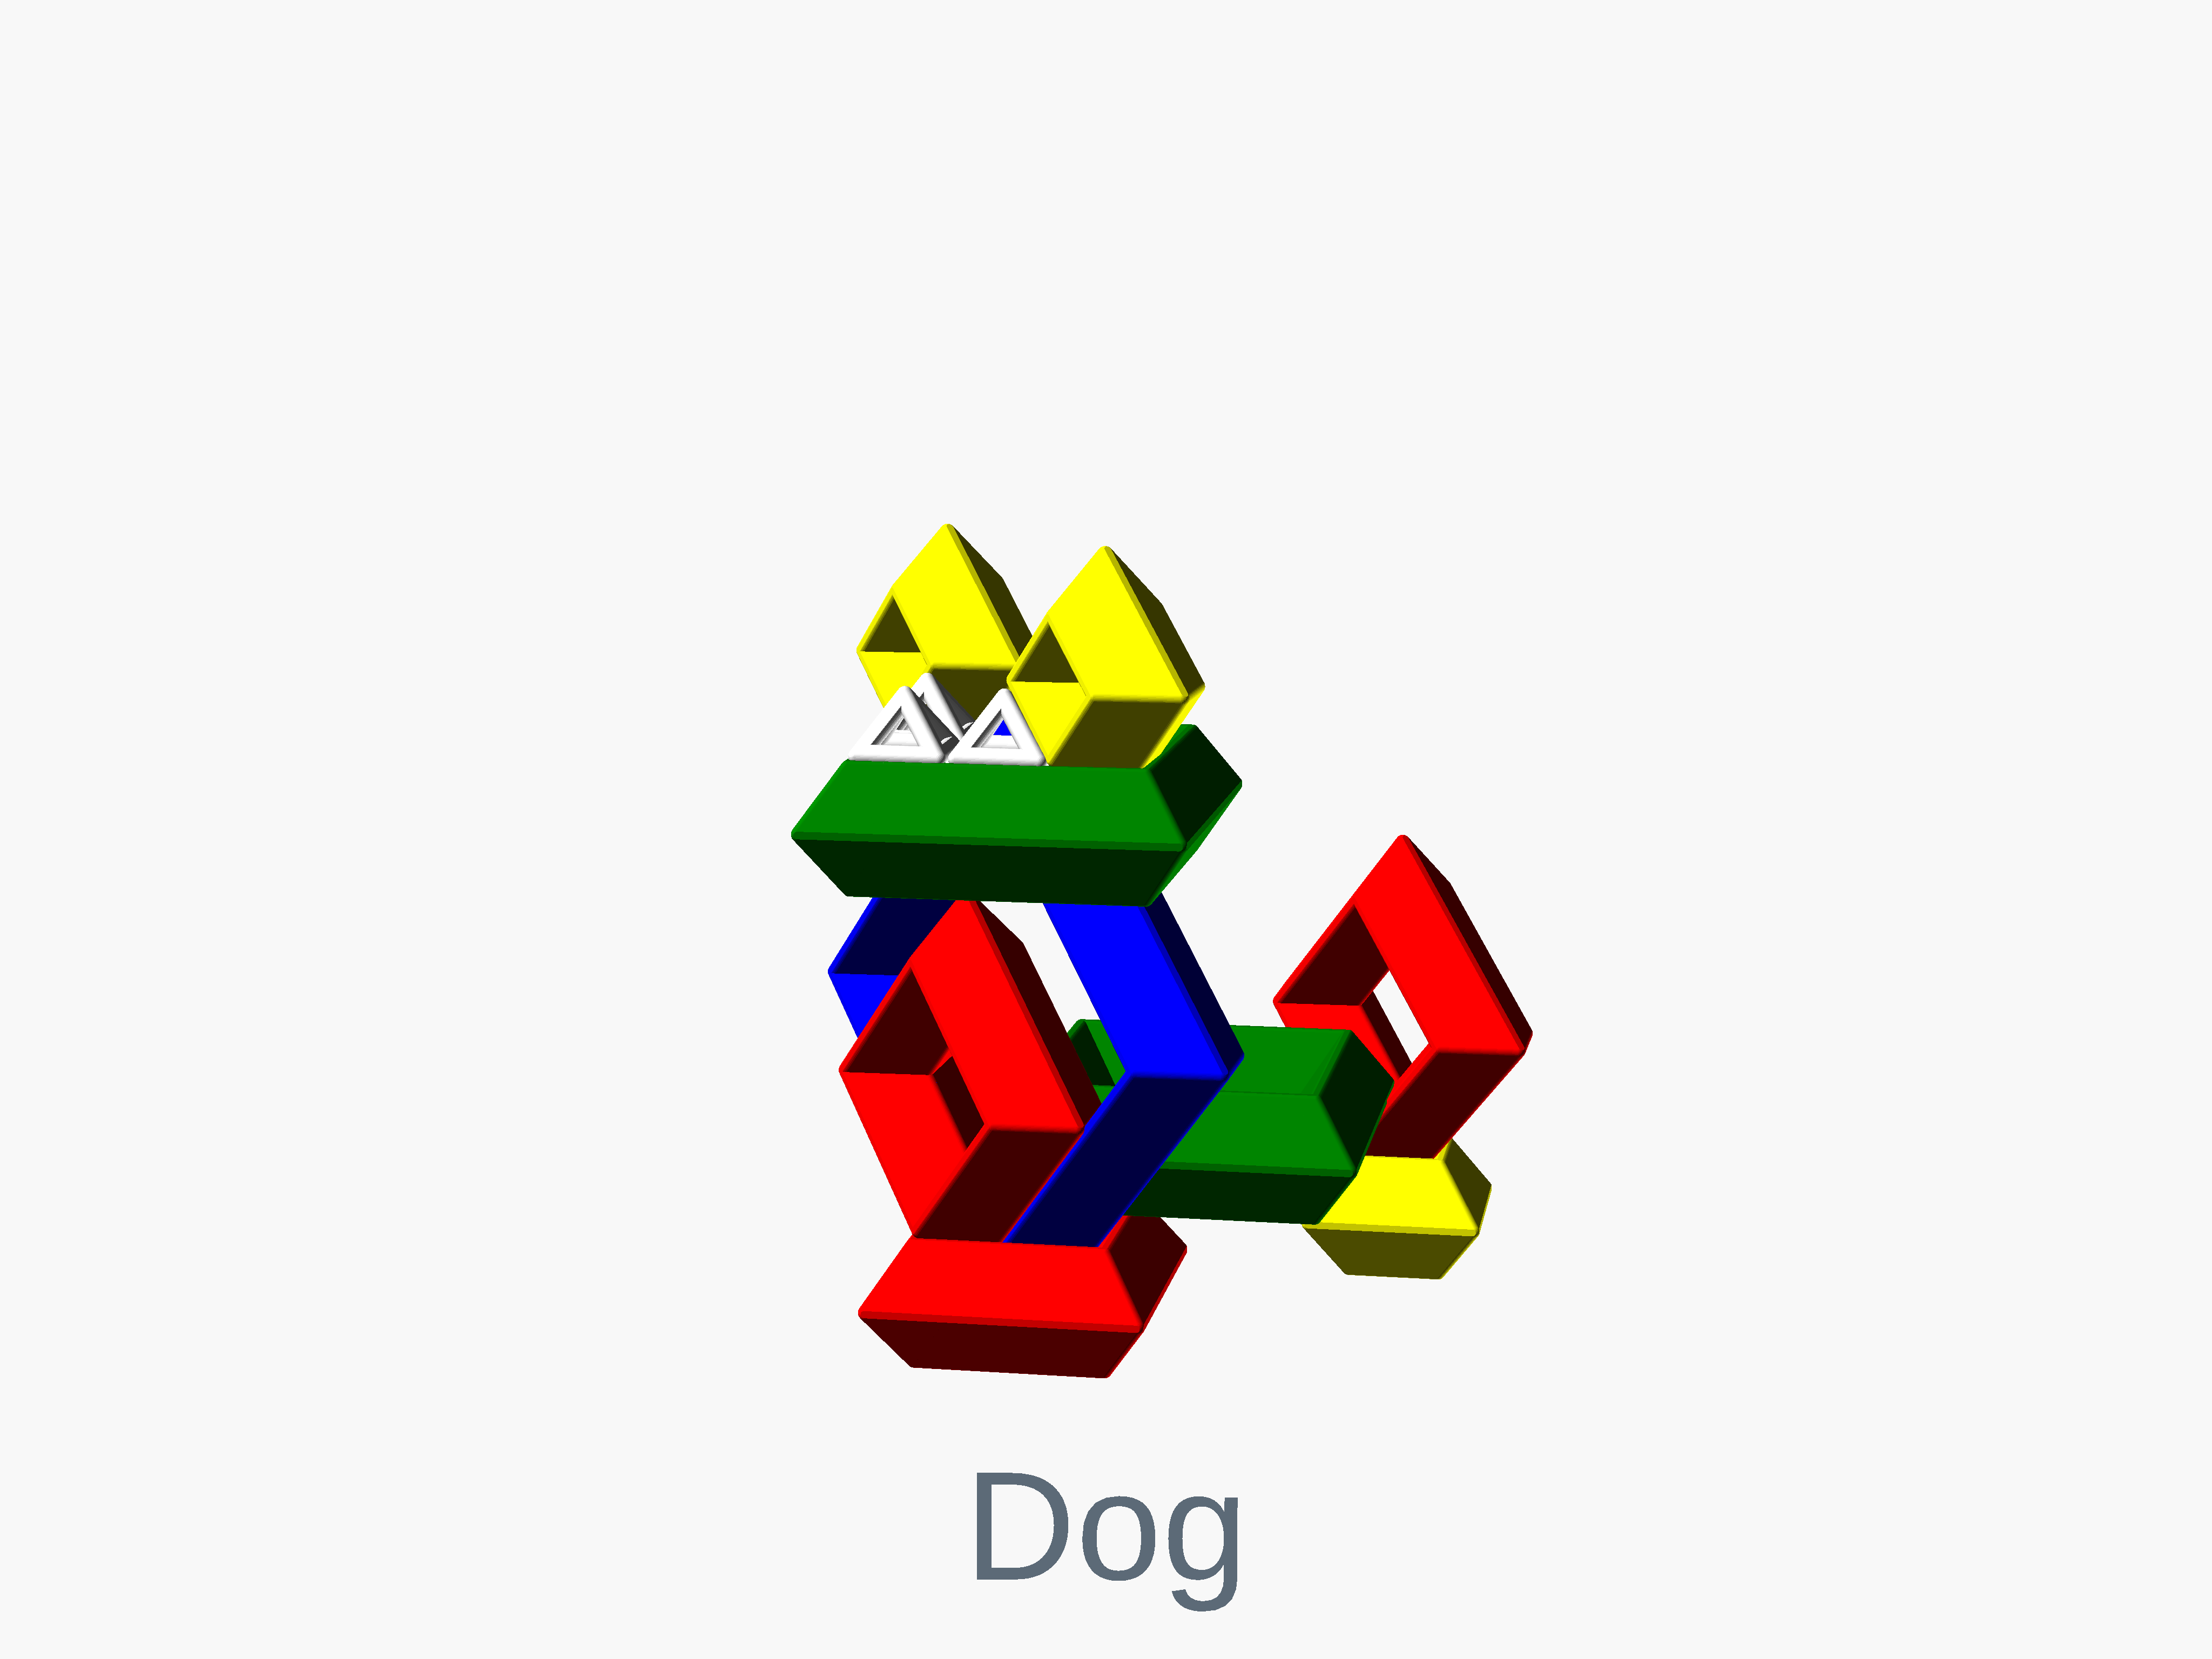 Octahedron dog